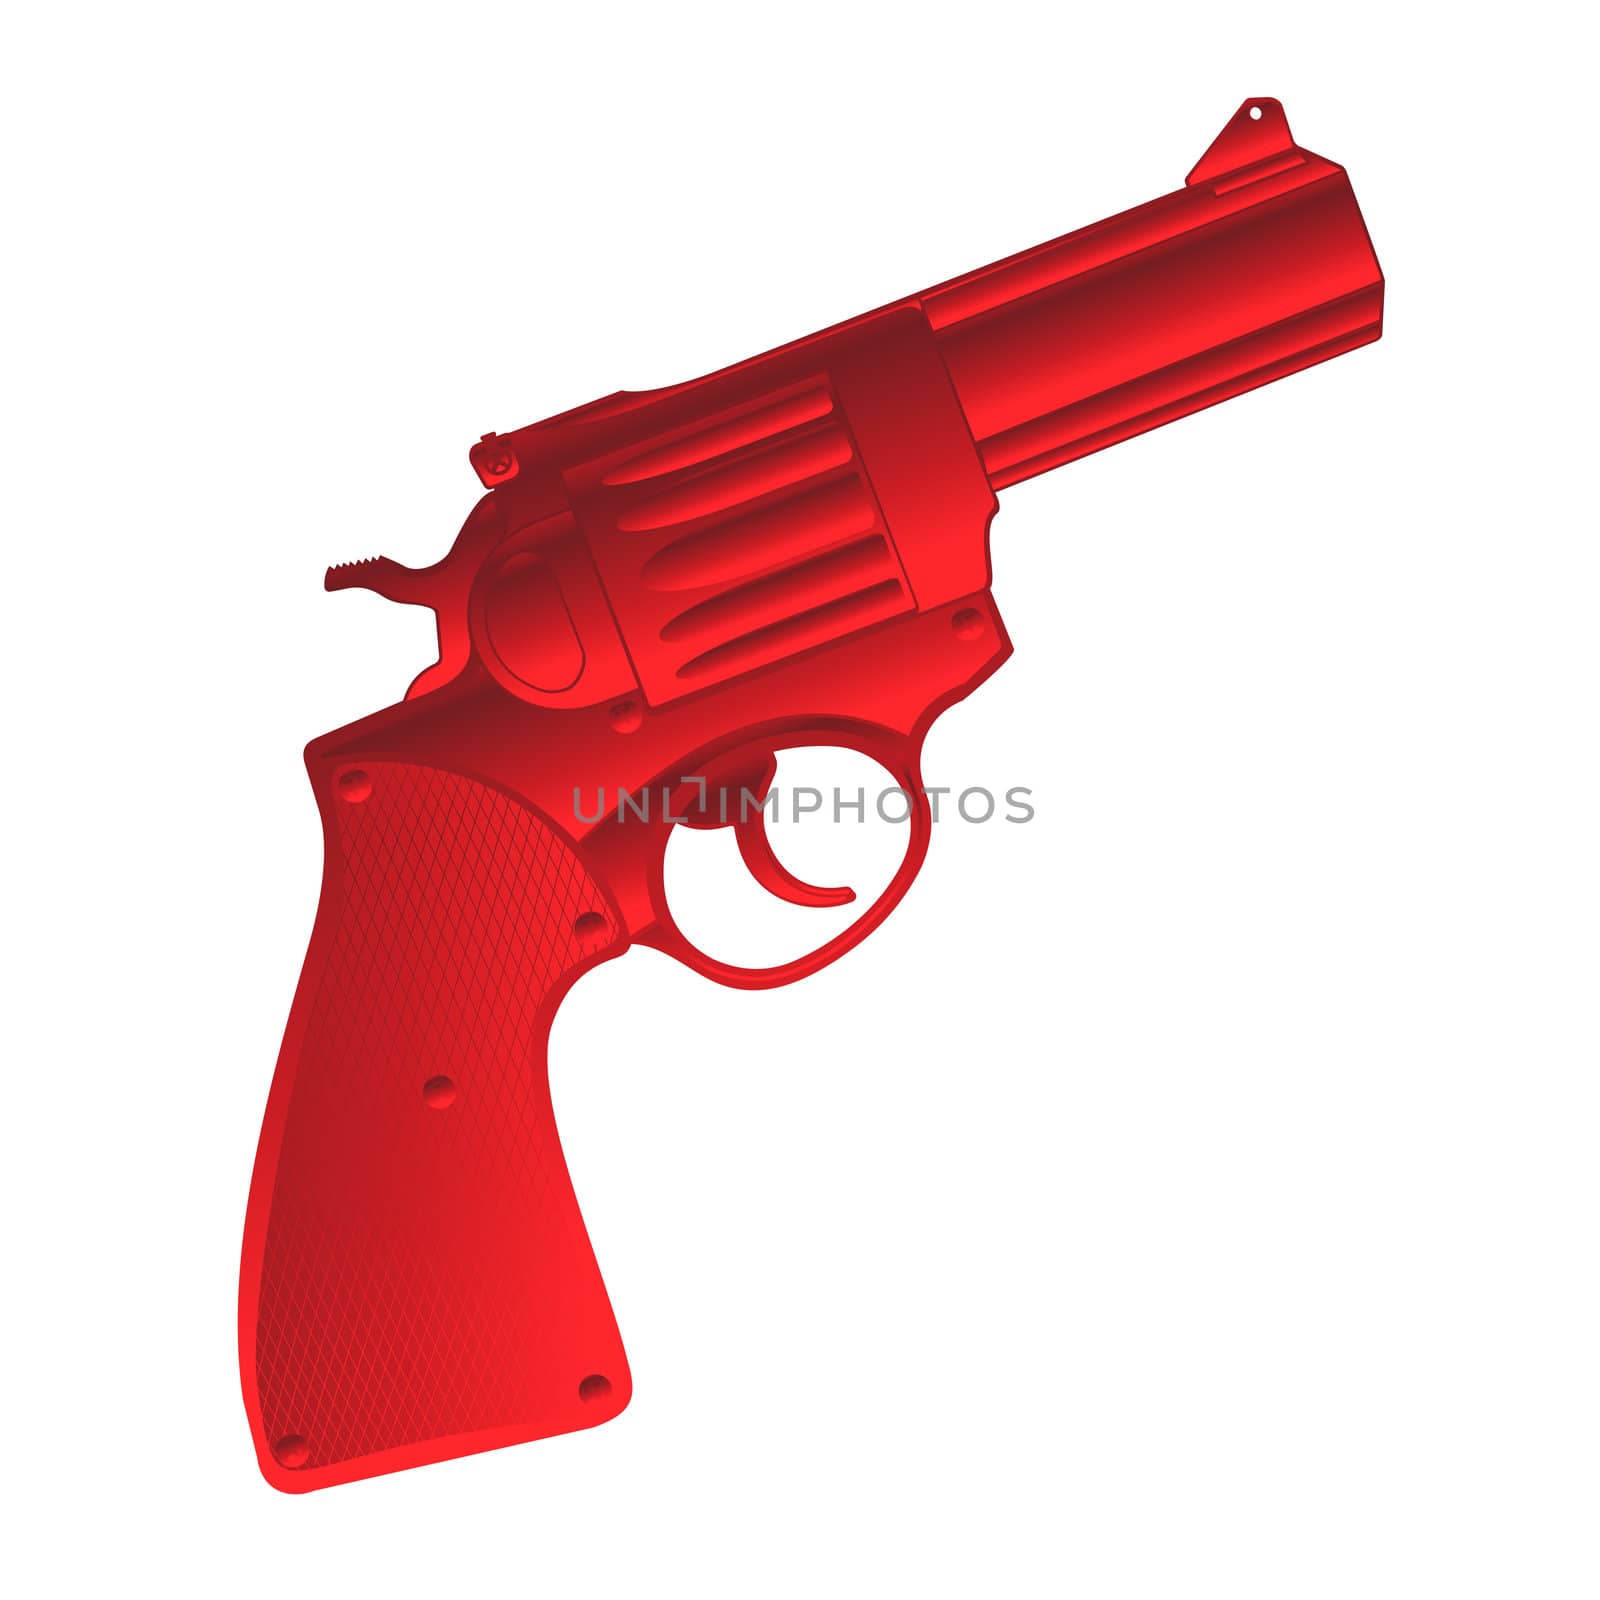 Red pistol by Lirch